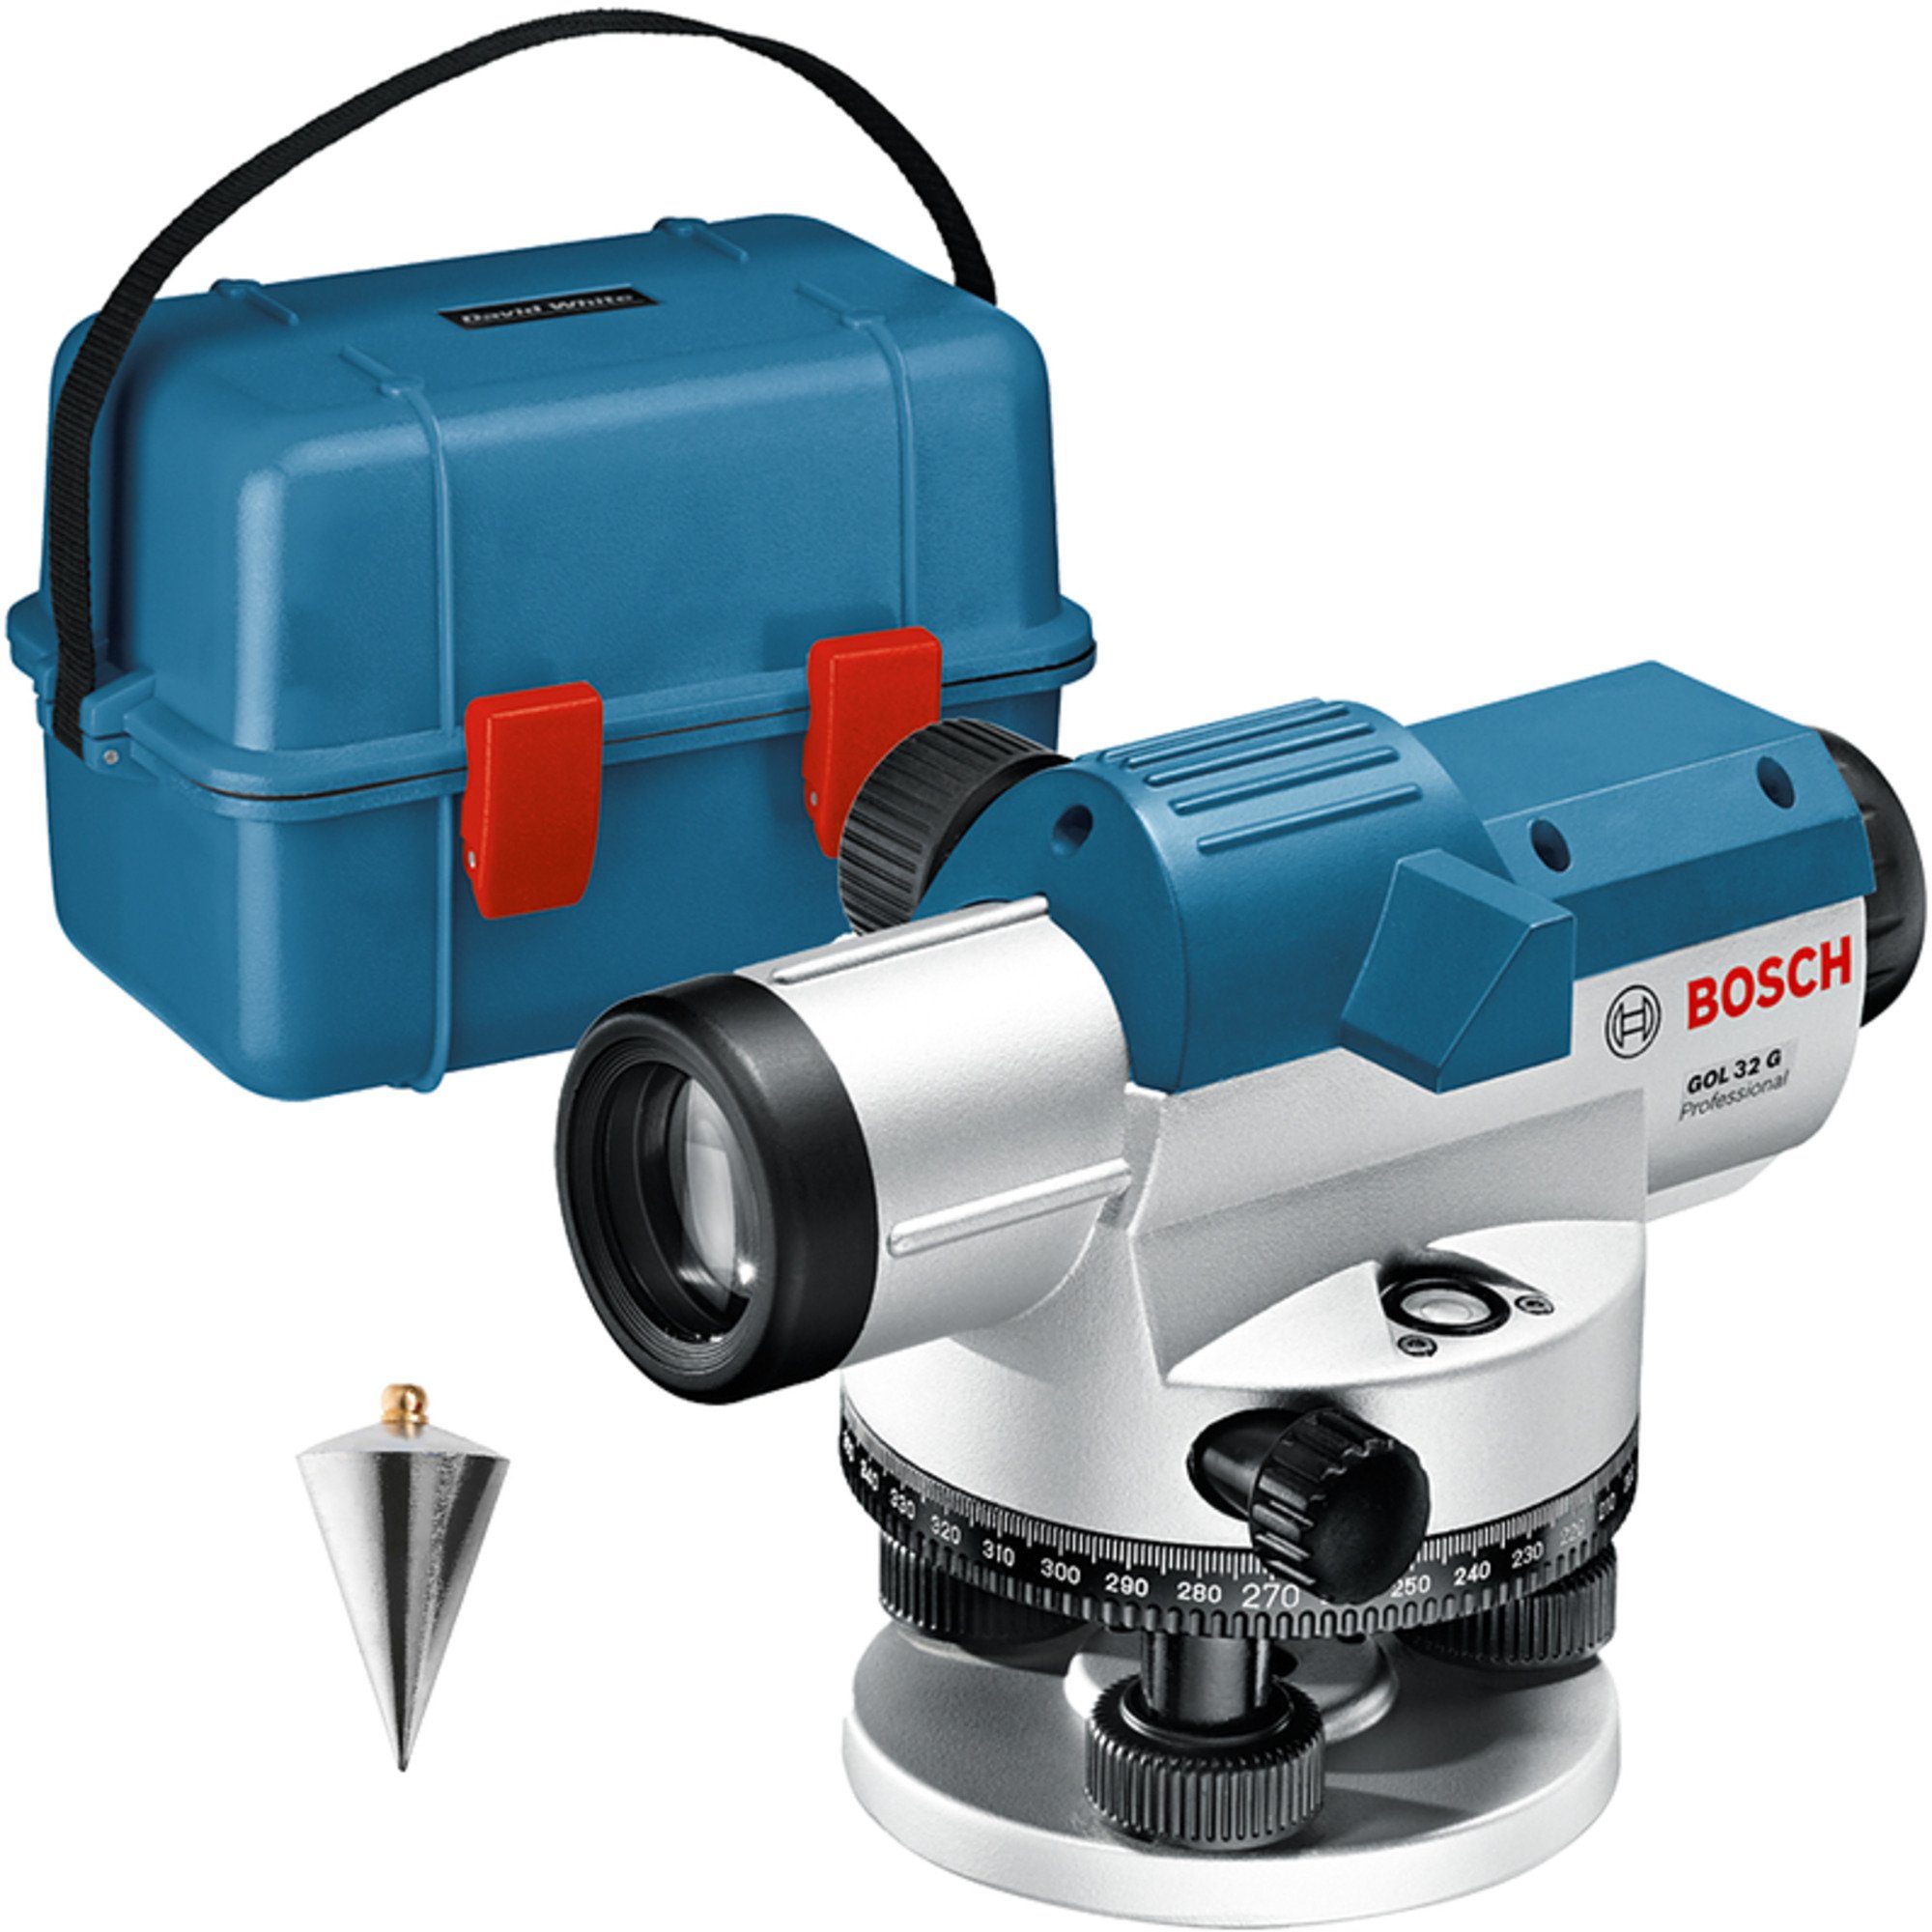 BOSCH Akku-Multifunktionswerkzeug Bosch Professional Optisches 32 GOL Nivelliergerät